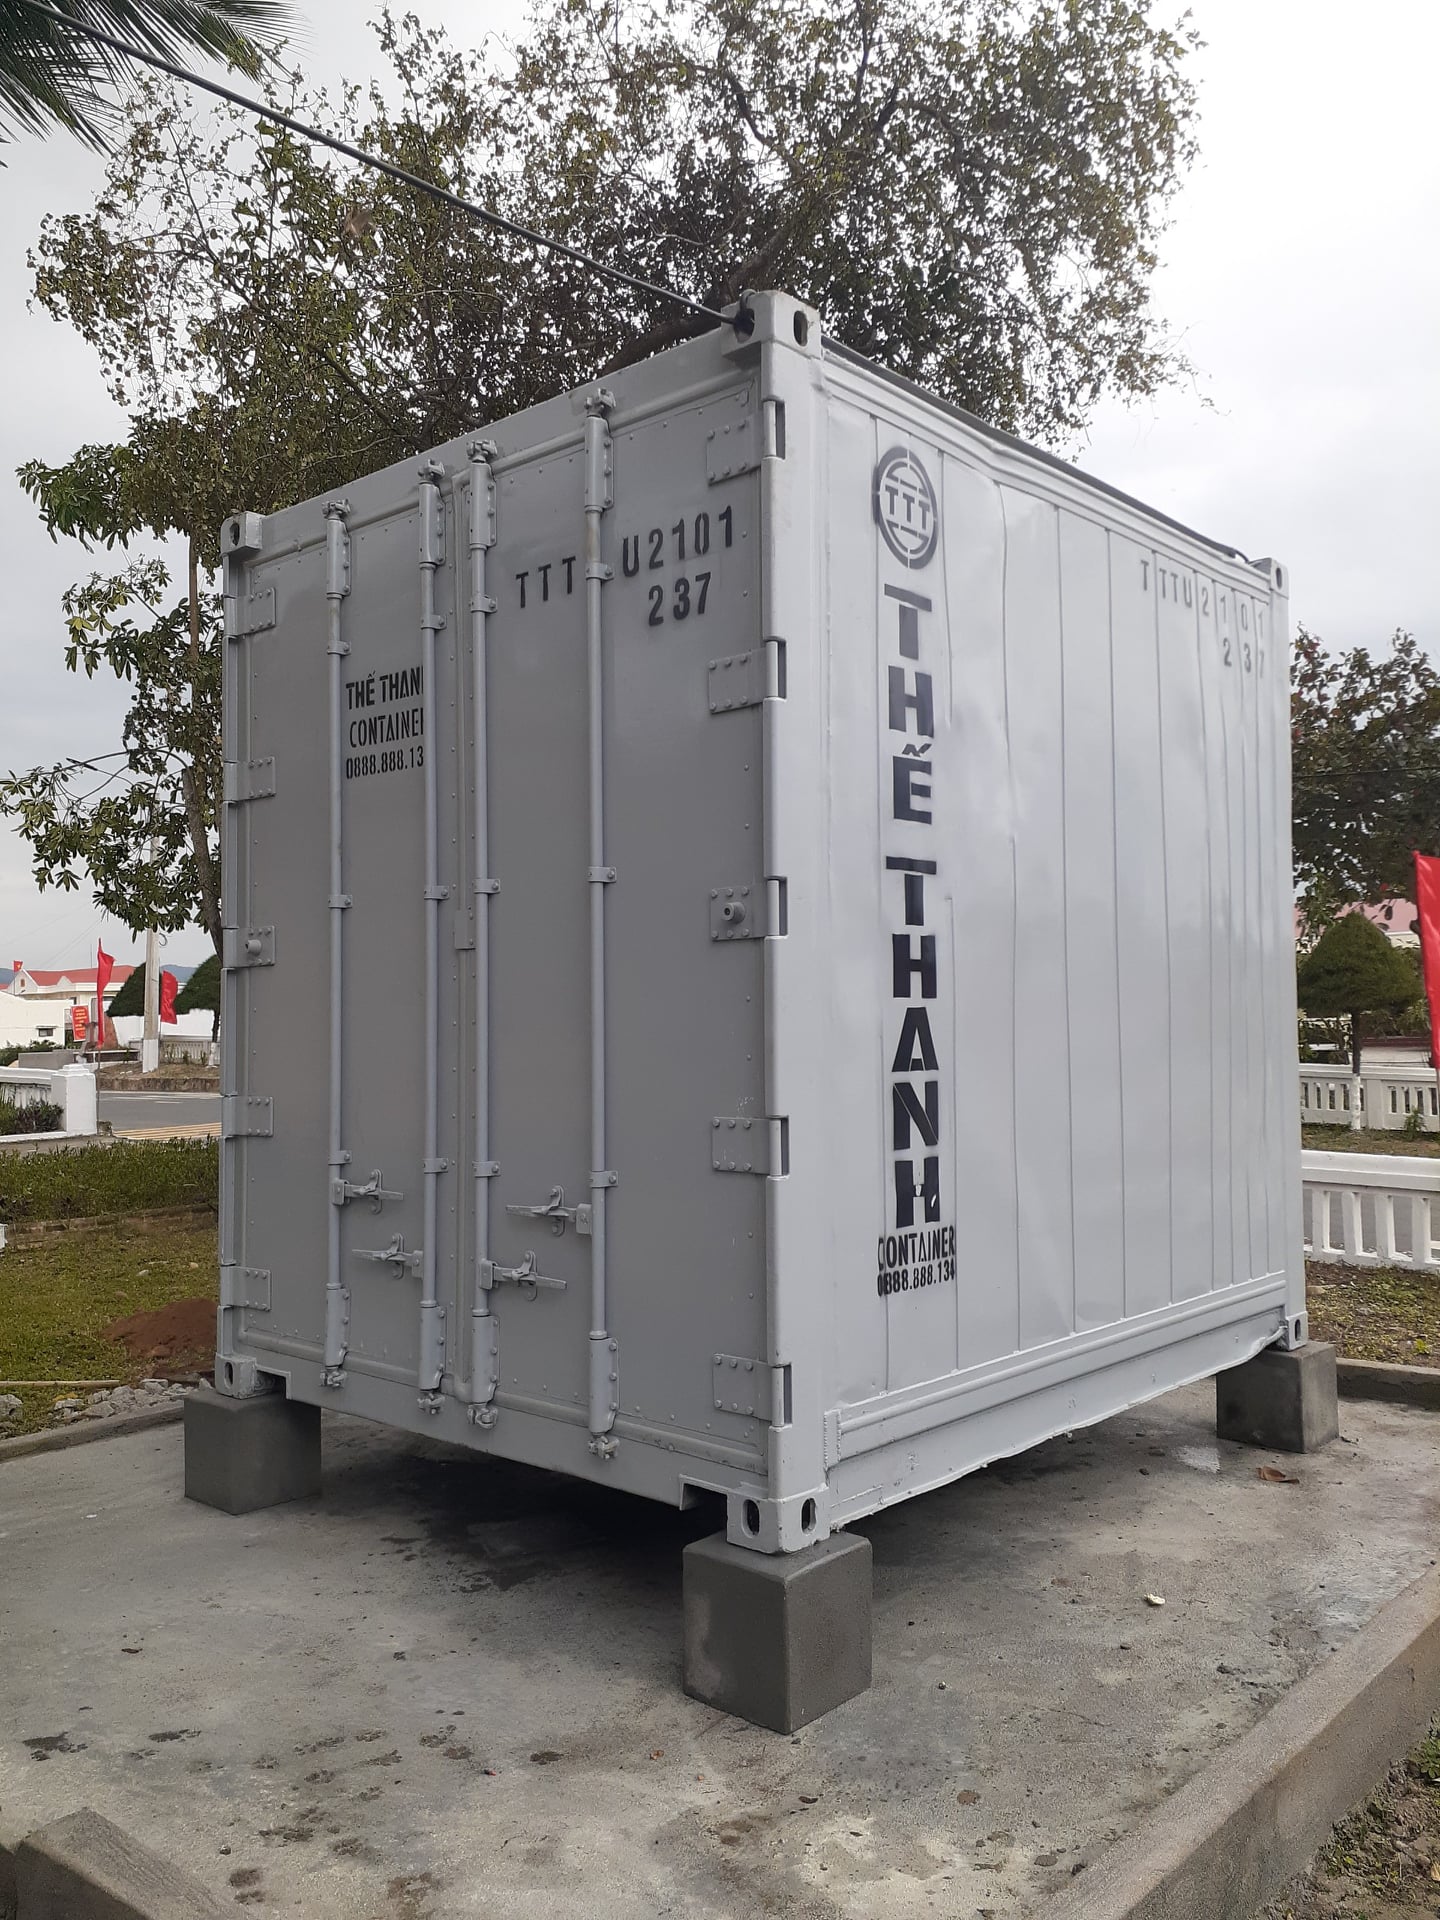 Container lạnh giá rẻ khu vựa miền NAM.